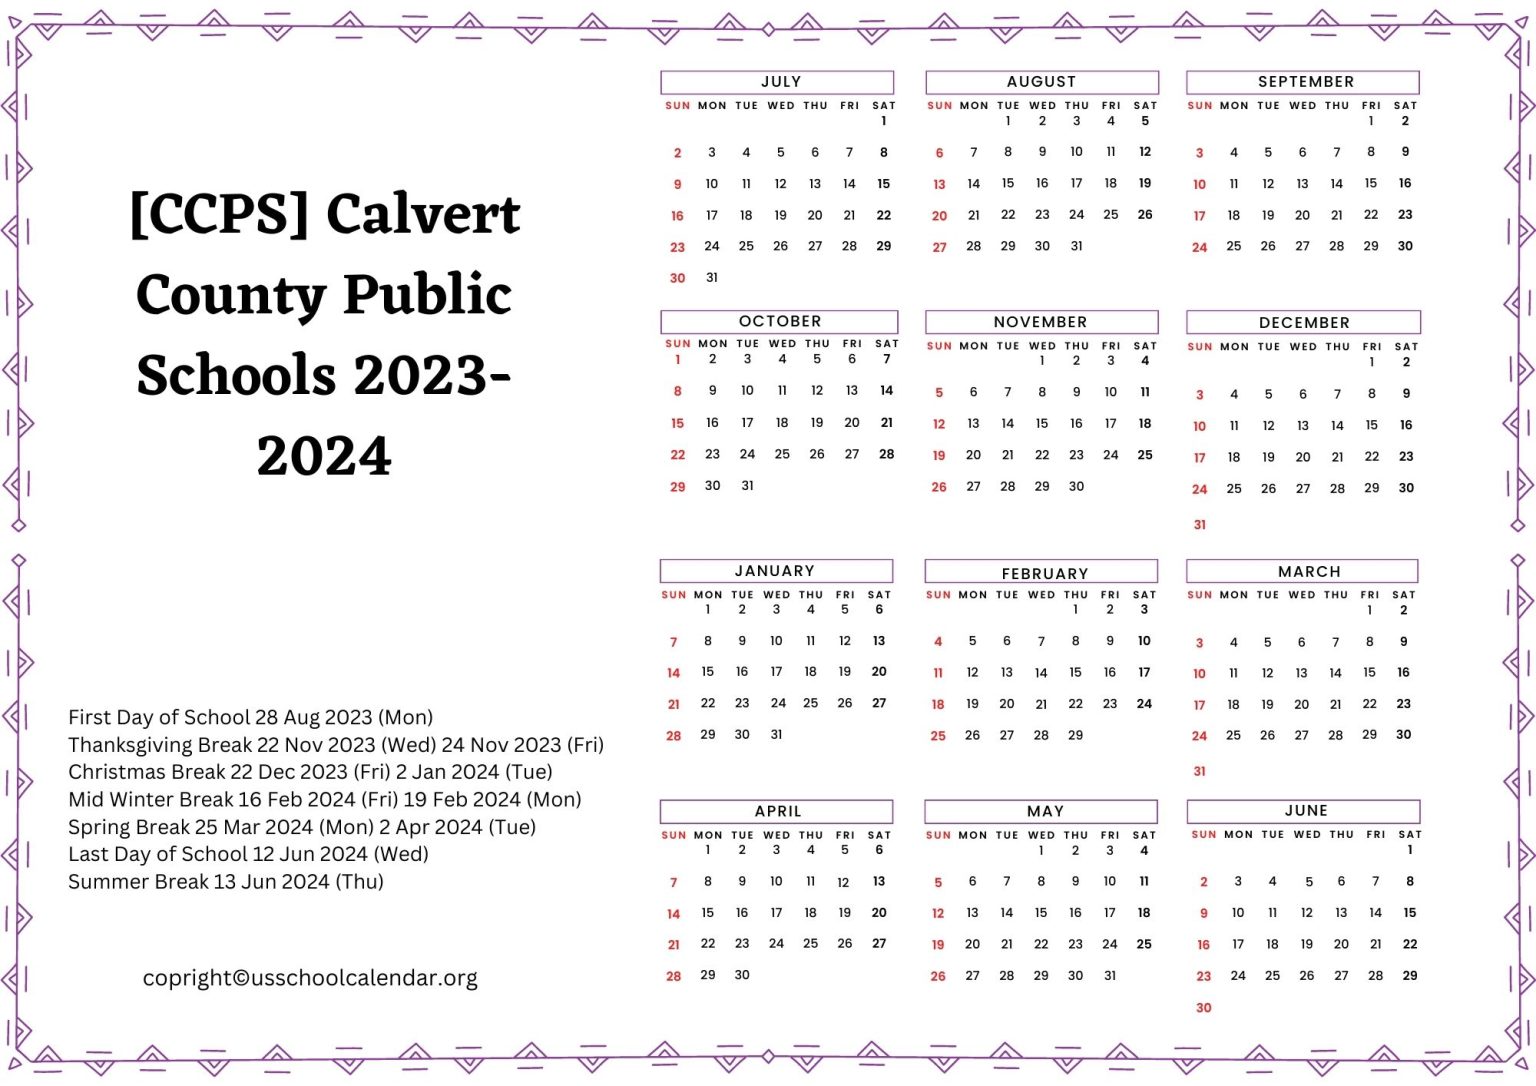 [CCPS] Calvert County Public Schools Calendar for 20232024